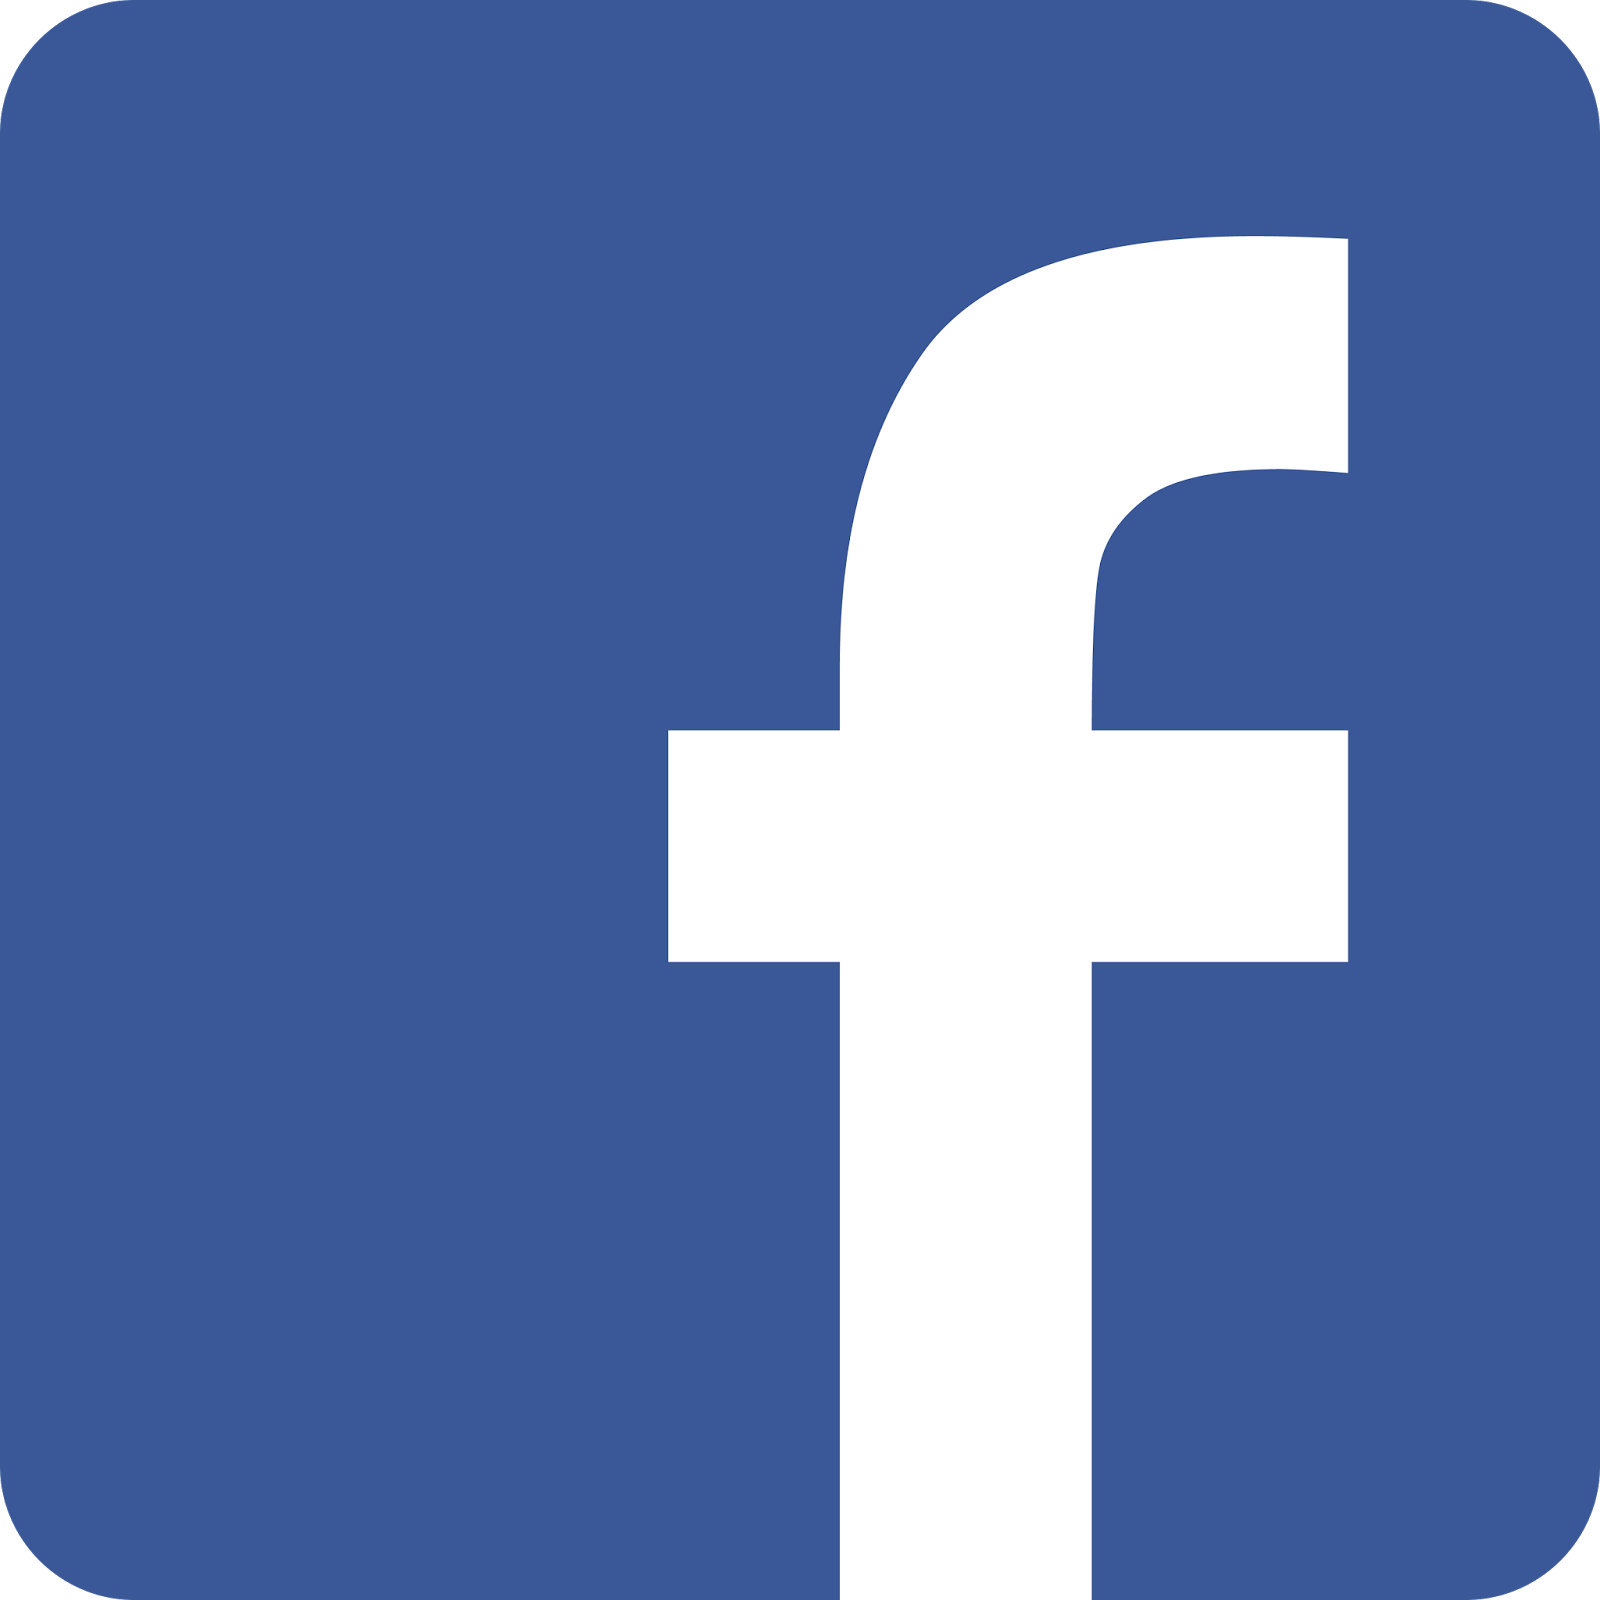 Blue Facebook Logo Background PNG Image